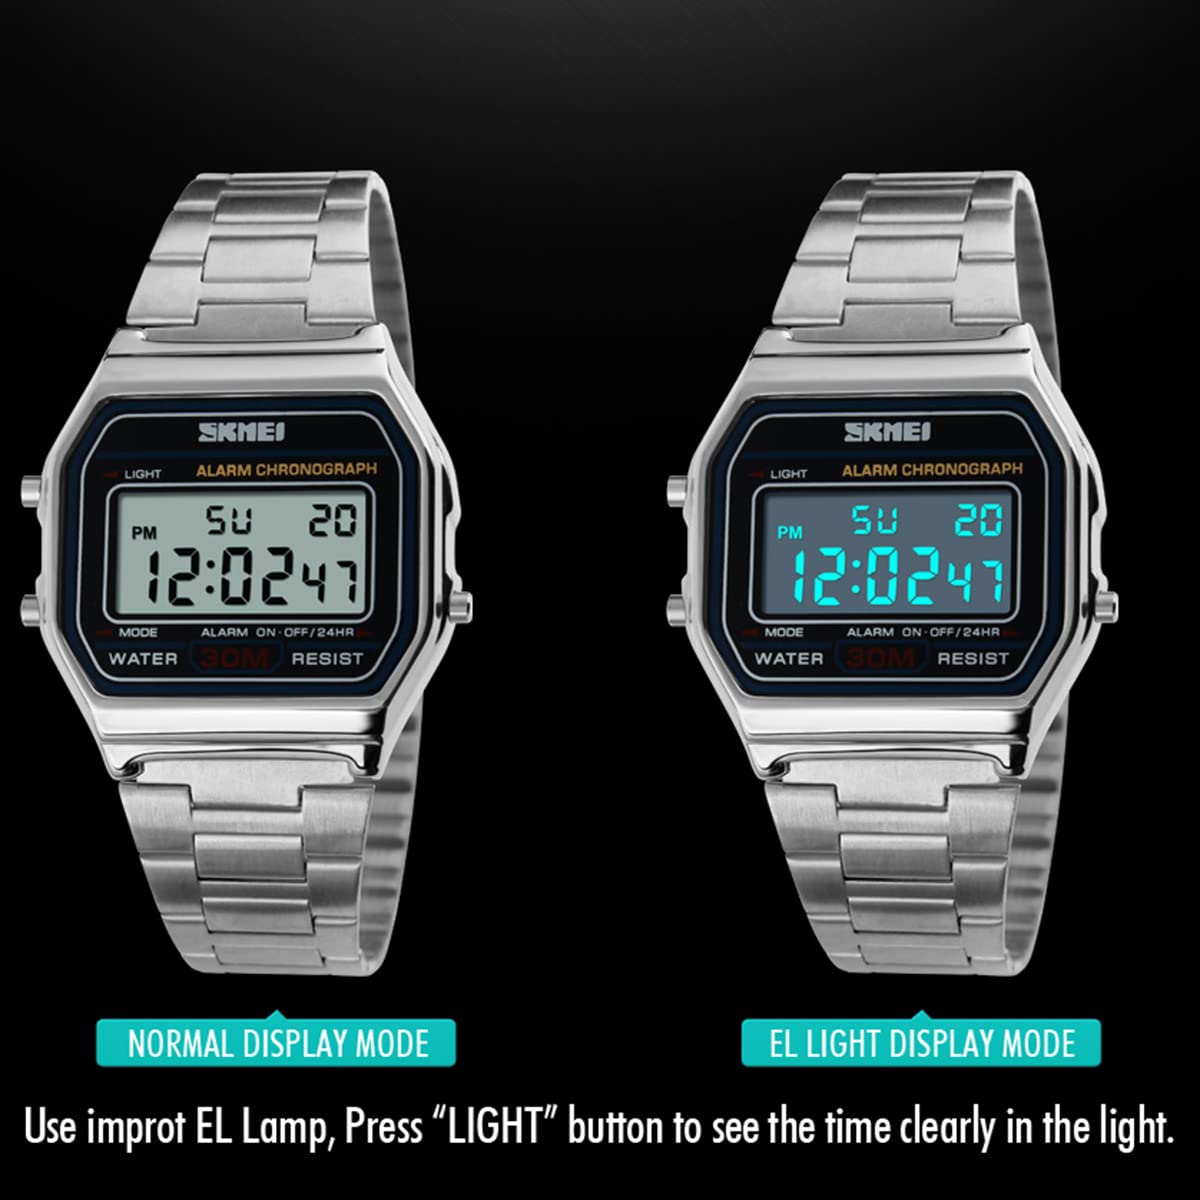 FAMKIT Retro Digital Watch for Men and Women, Luxury Business Watch, Waterproof, Stainless Steel Sports Watch